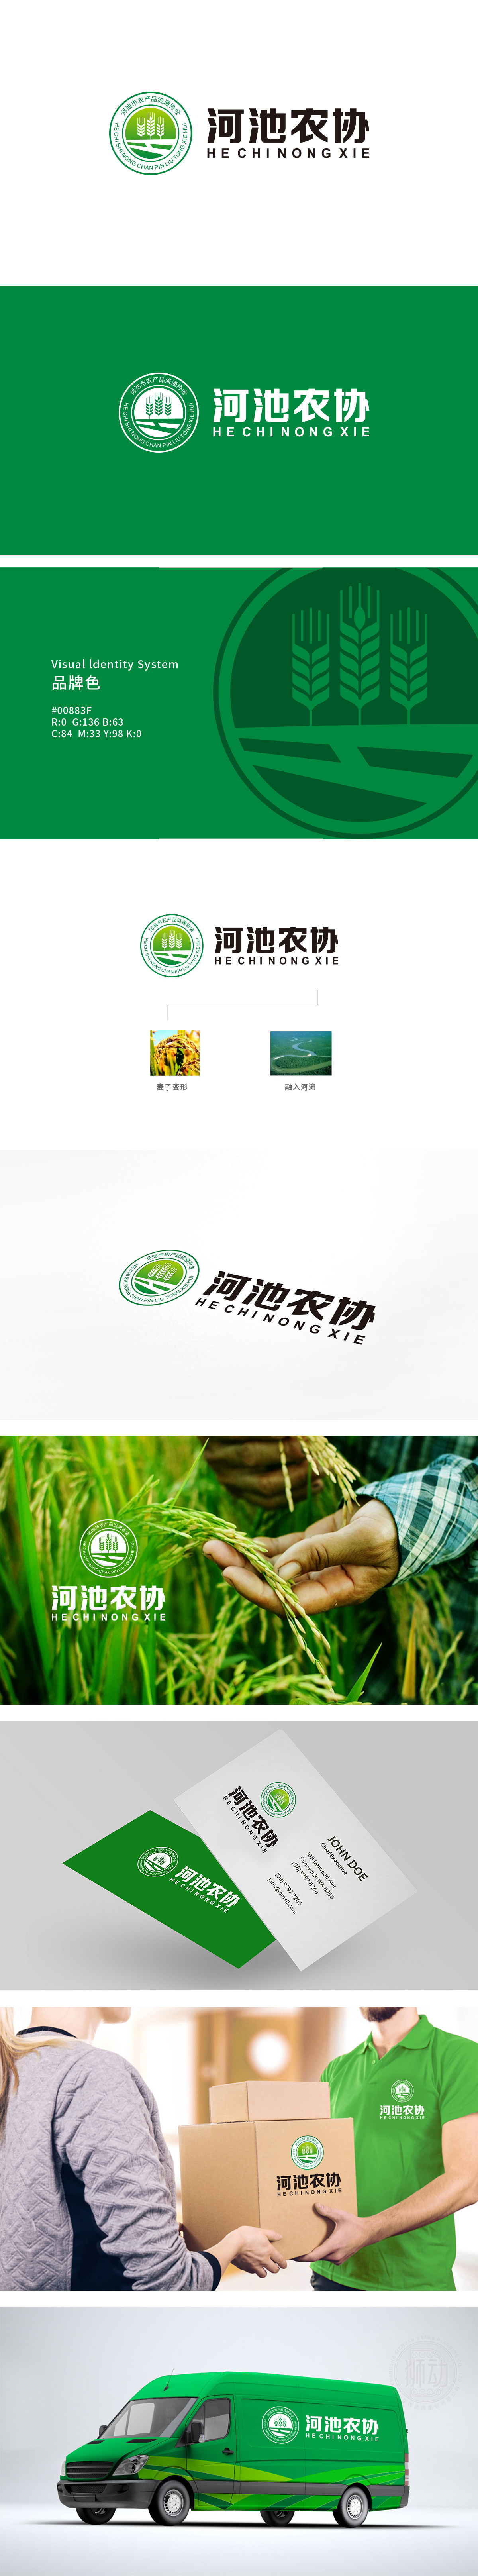 河池市农产品流通协会	生鲜/农产品	LOGO设计